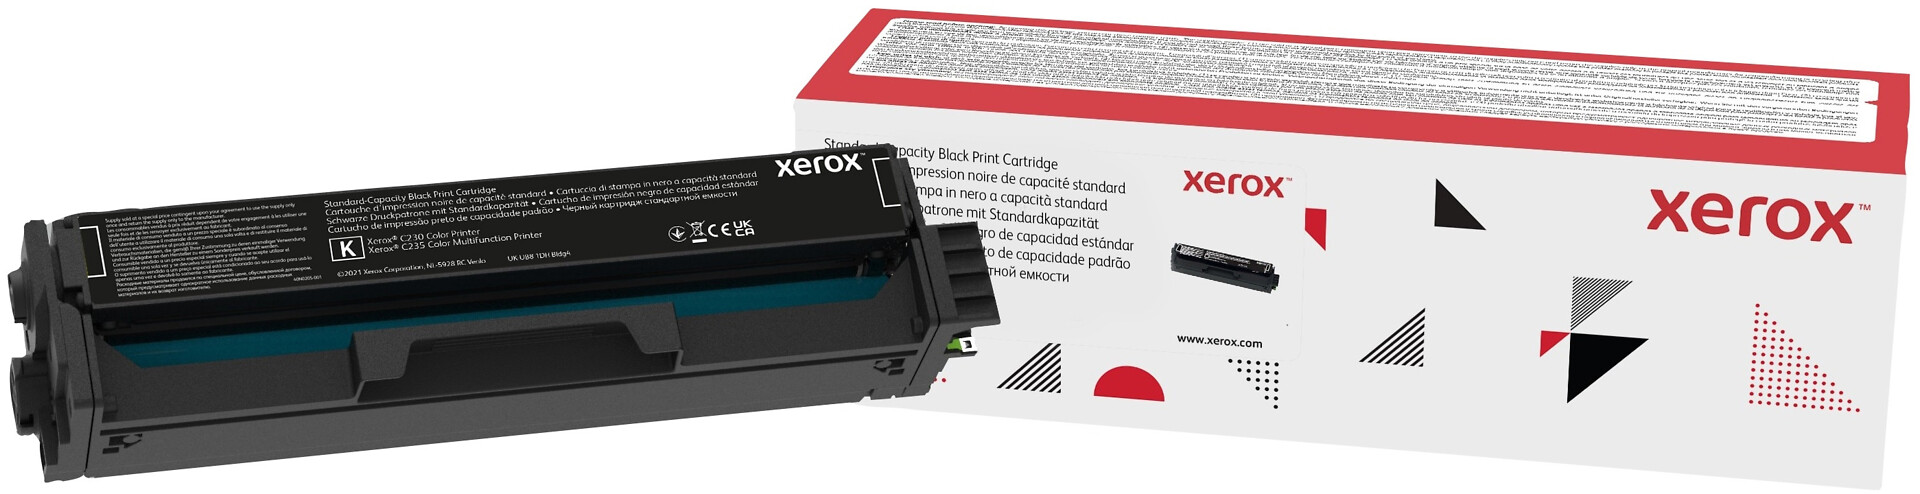 Xerox C230/C235